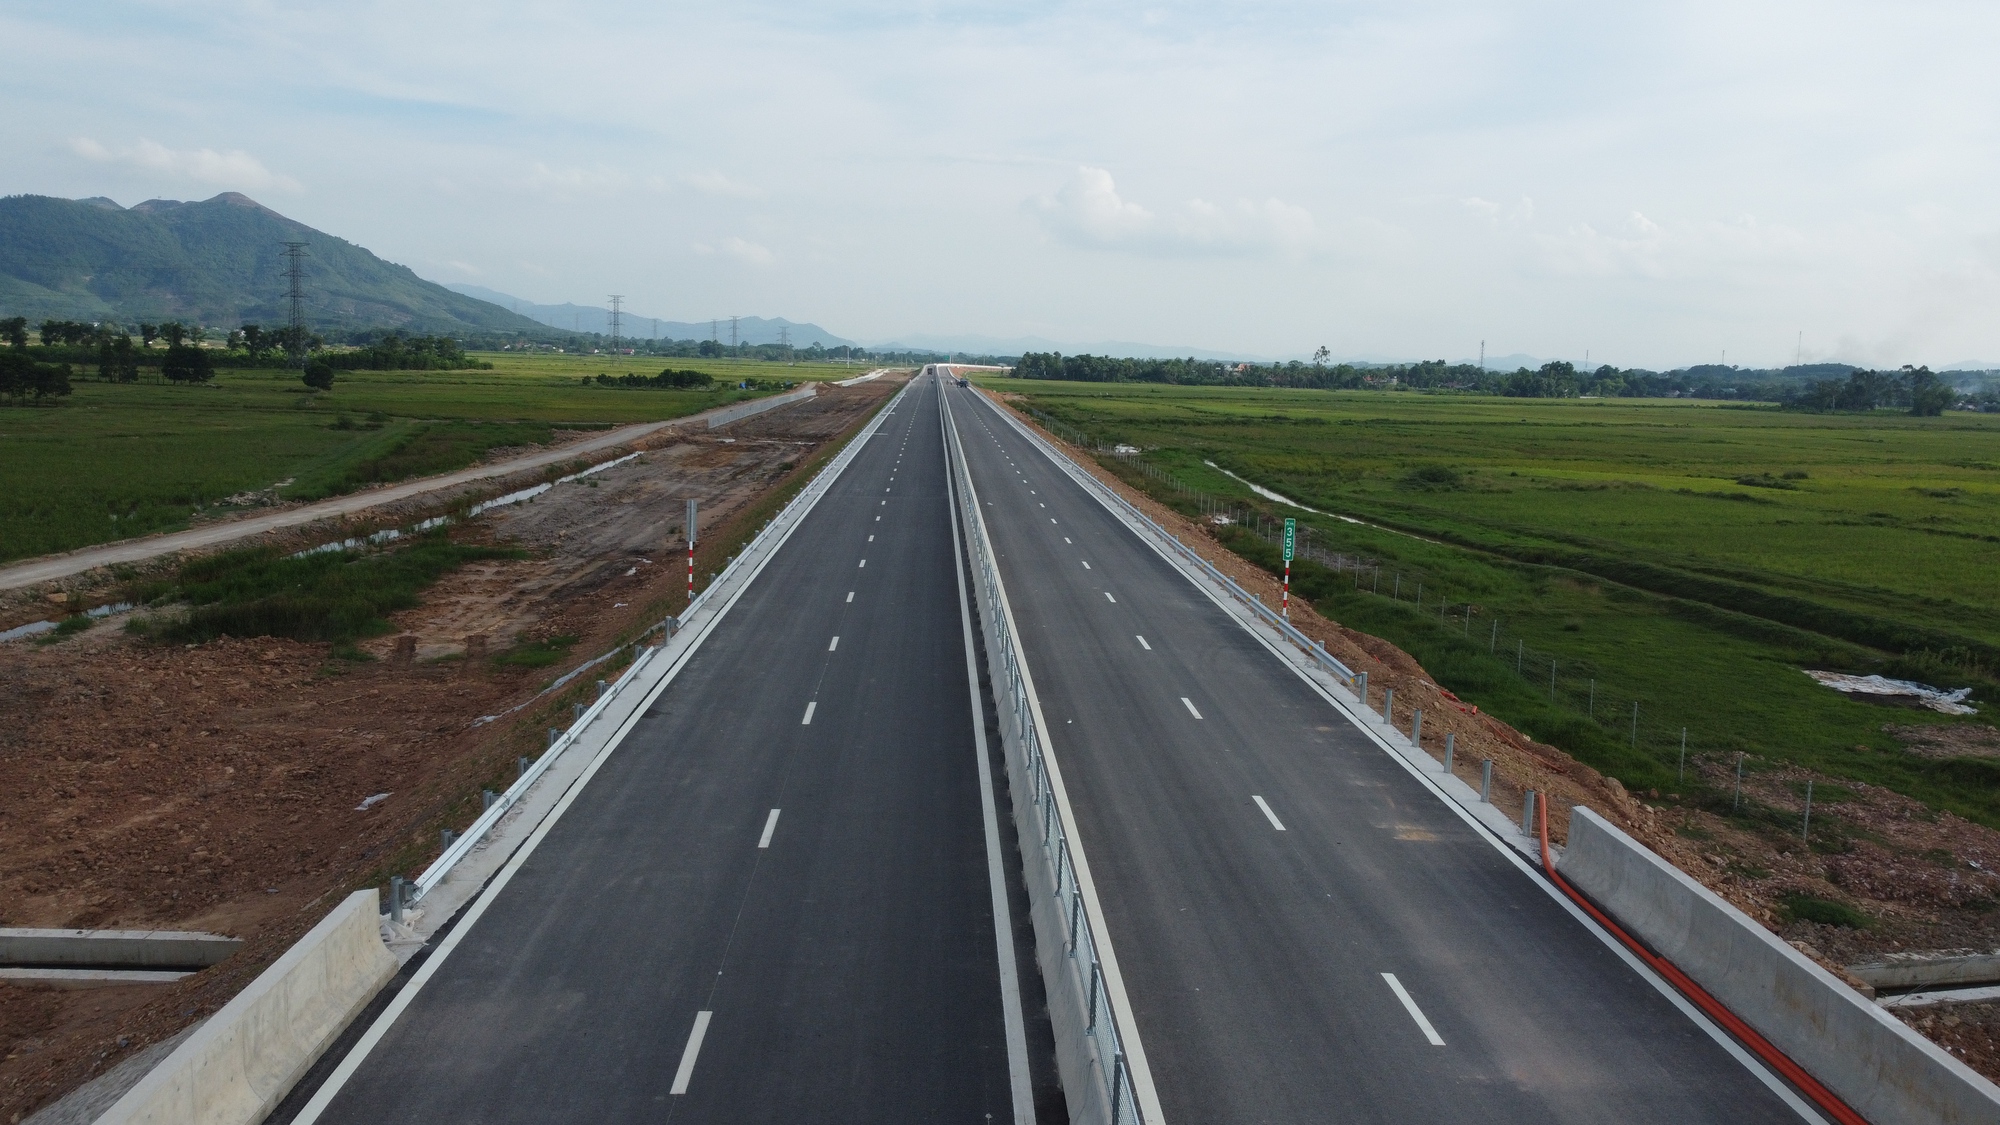 Tạm dừng khai thác một số đoạn tuyến, phục vụ khánh thành cao tốc qua Thanh Hoá, Nghệ An - Ảnh 1.